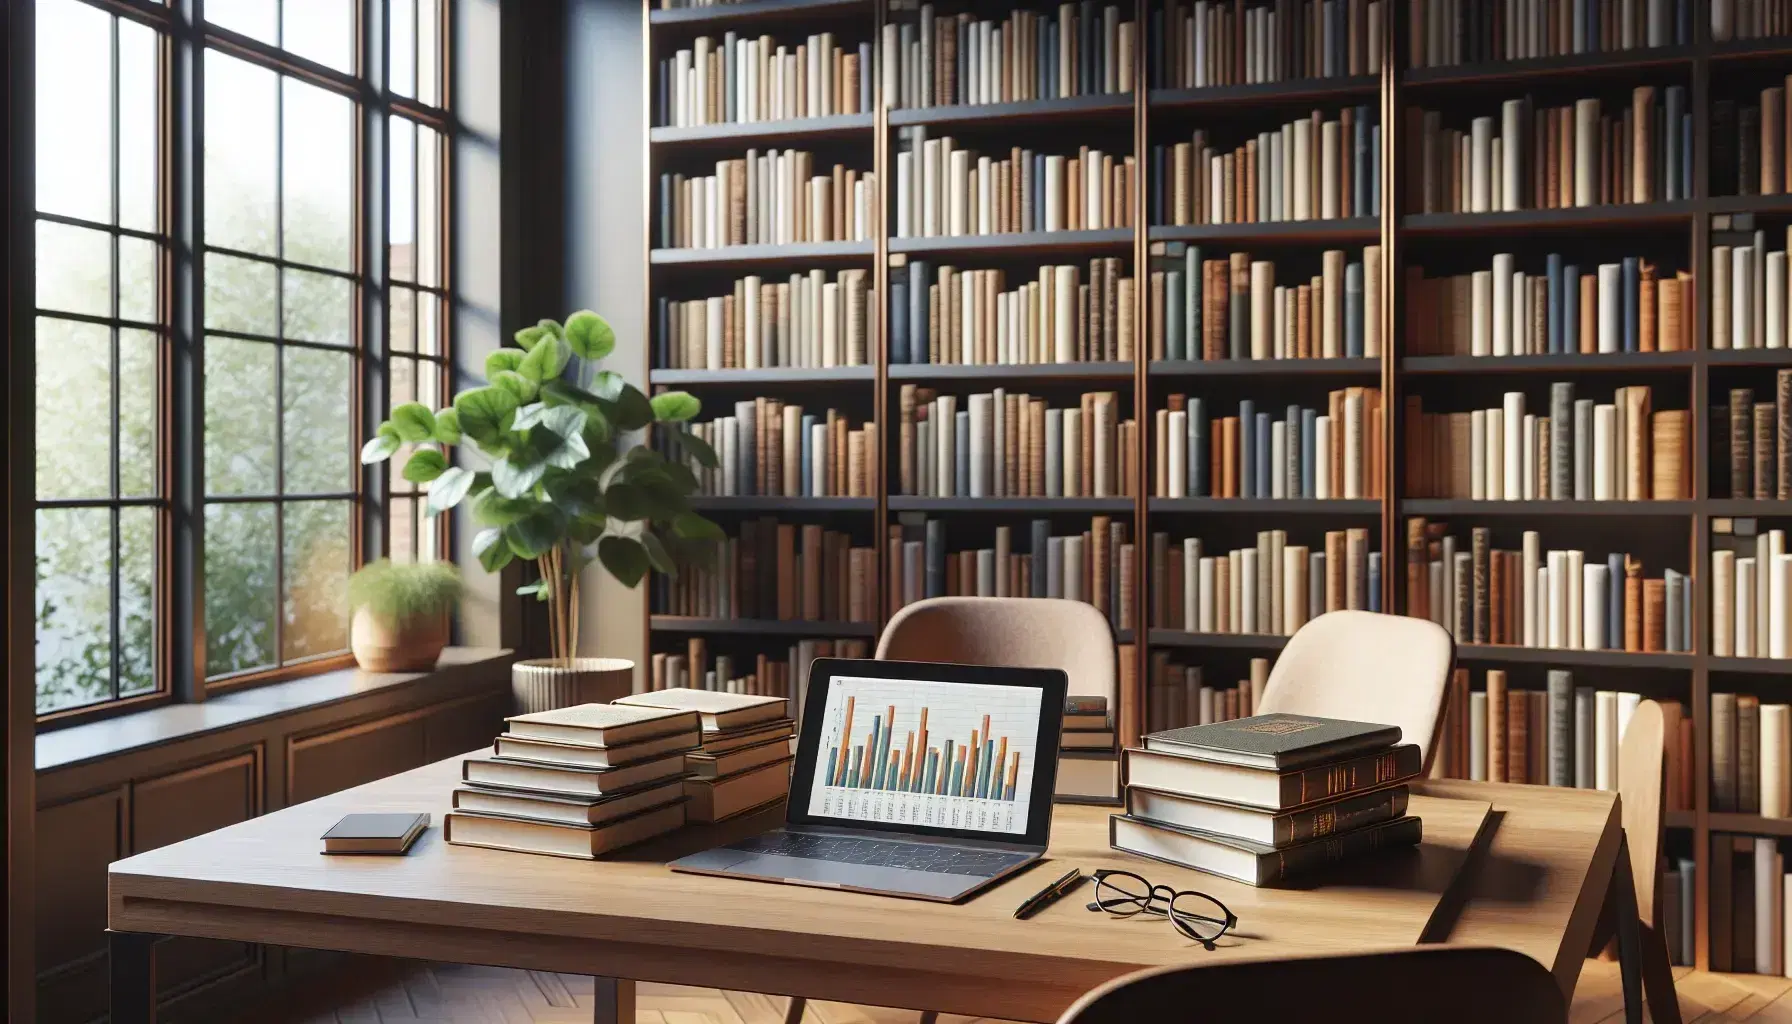 Biblioteca académica iluminada con estantes de madera oscura llenos de libros, mesa de estudio con libros abiertos, laptop con gráficos y gafas, luz natural y planta verde.